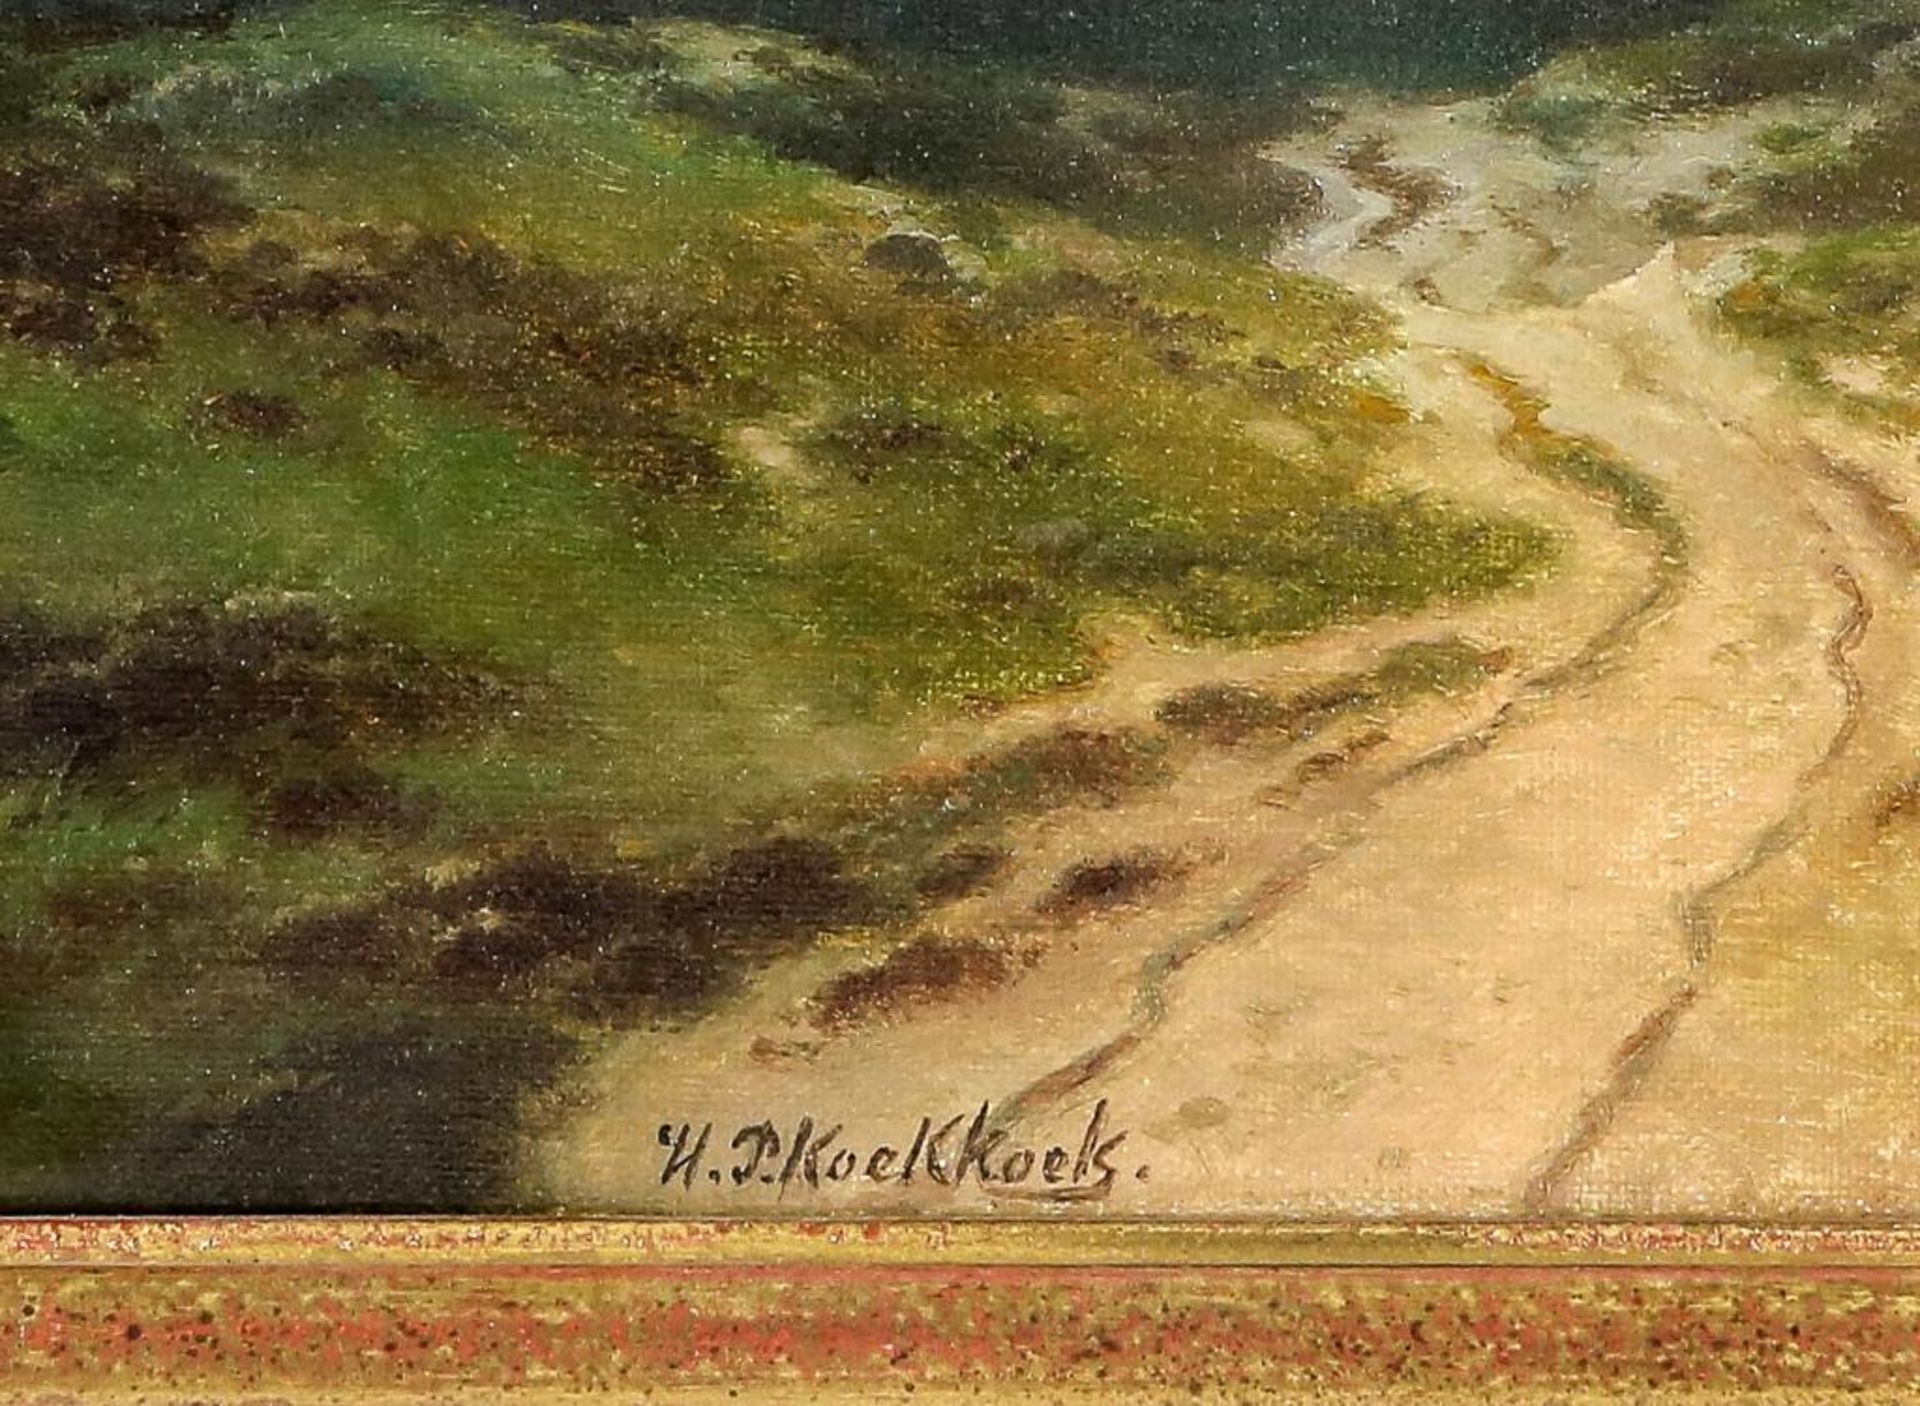 Koekkoek, Hendrik Pieter. bosweg - Image 2 of 4